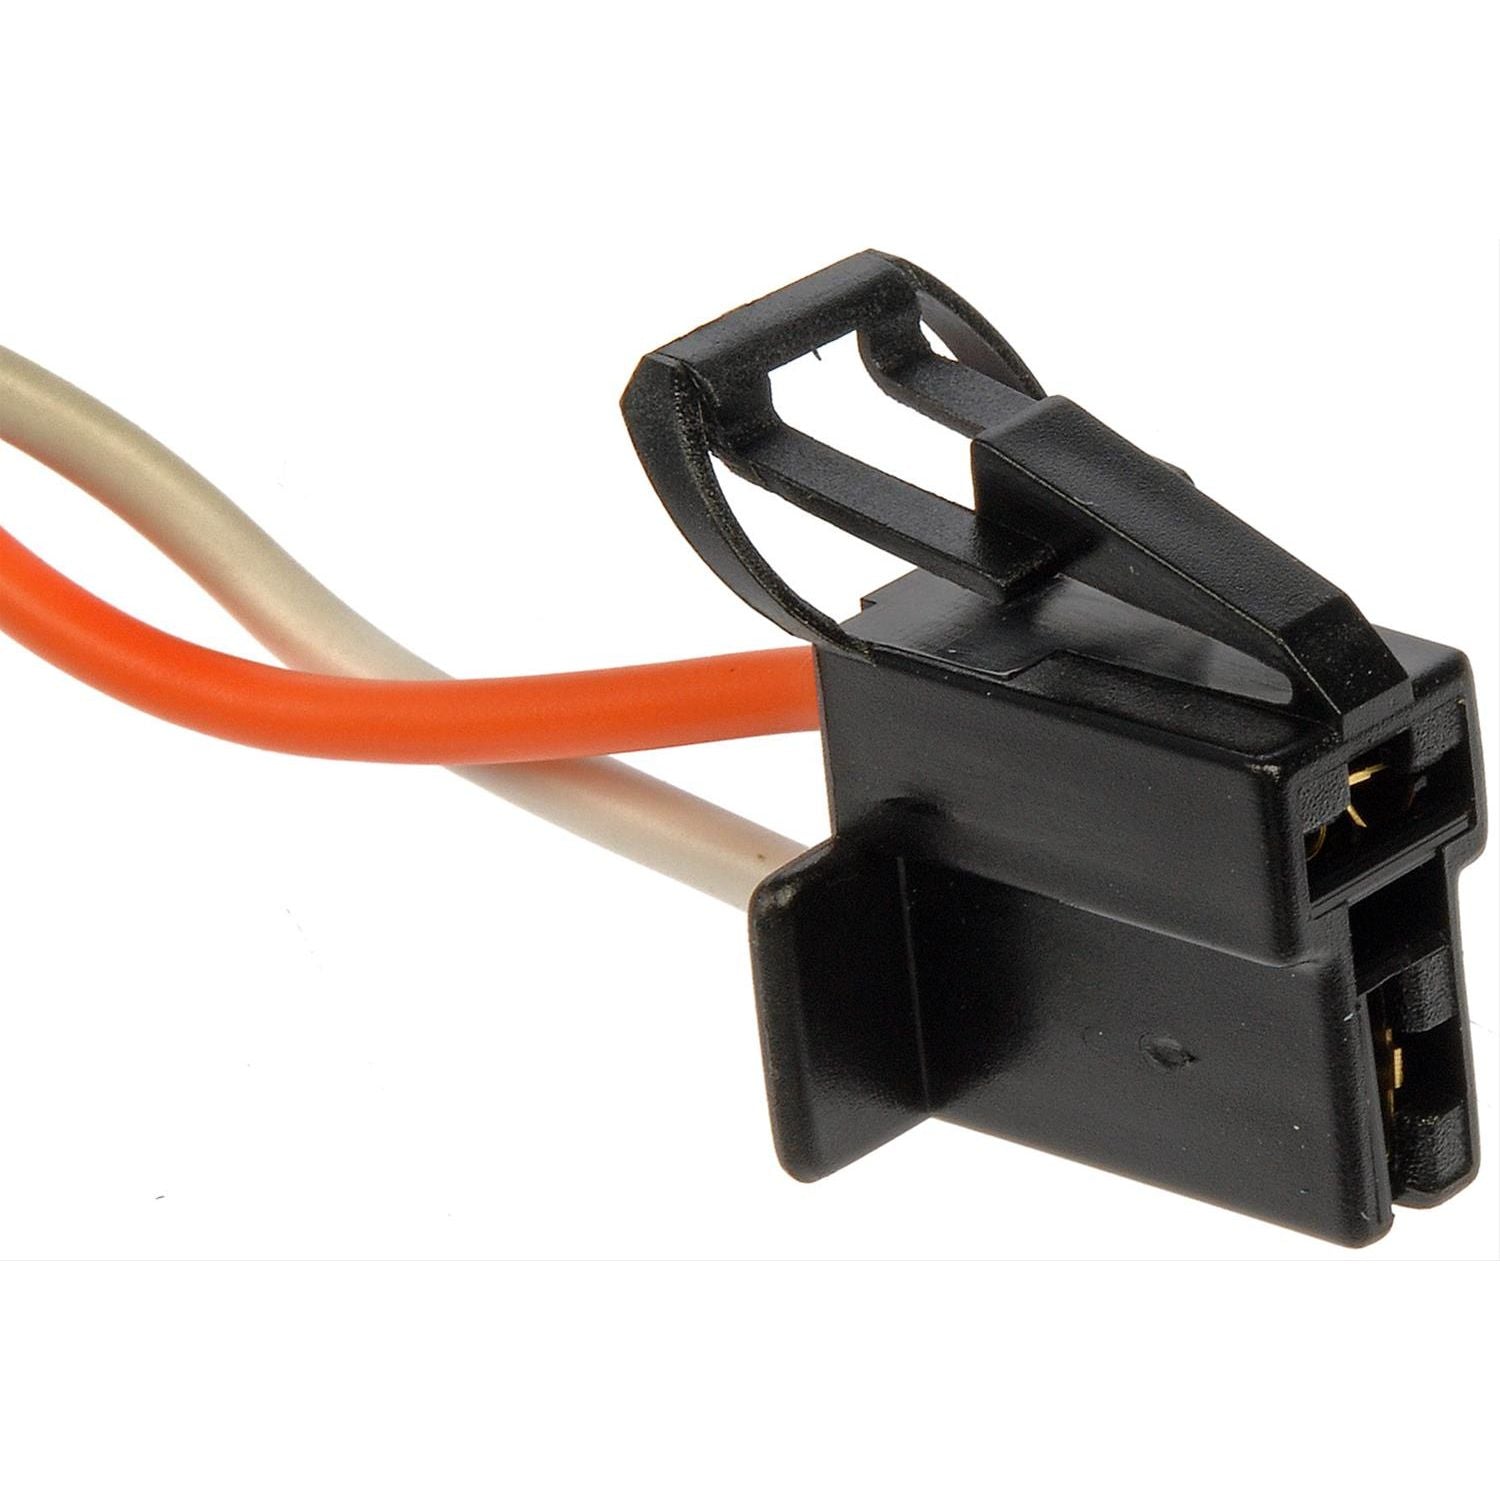 Dorman - Conduct-Tite Square 2 Wire Alternator Electrical Harness 85125